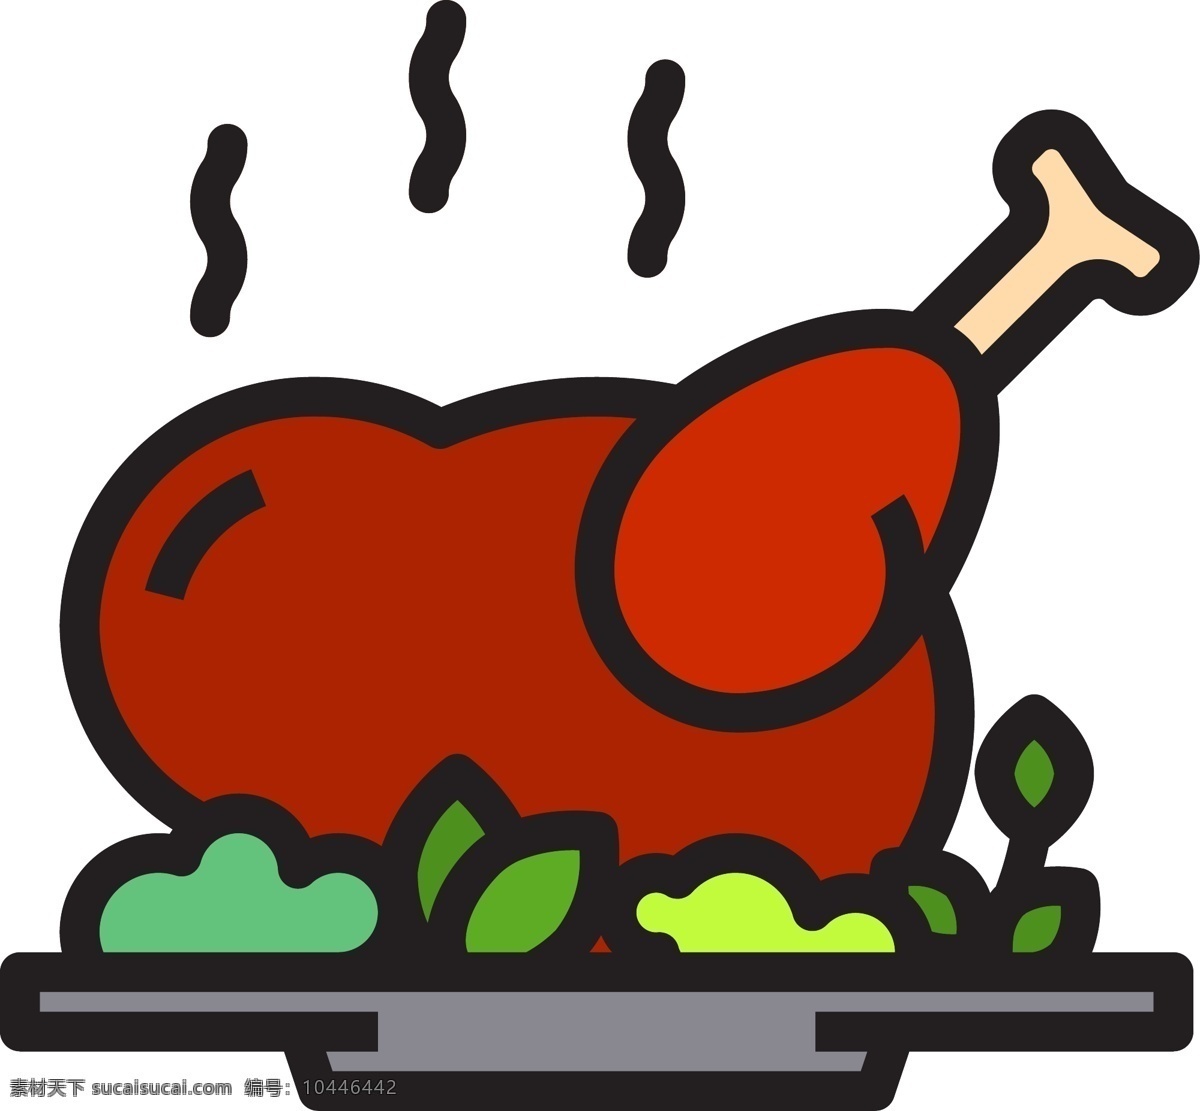 汉堡 鸡腿 食物 图标 烤鸡 炒饭 中餐 午饭 矢量食物图标